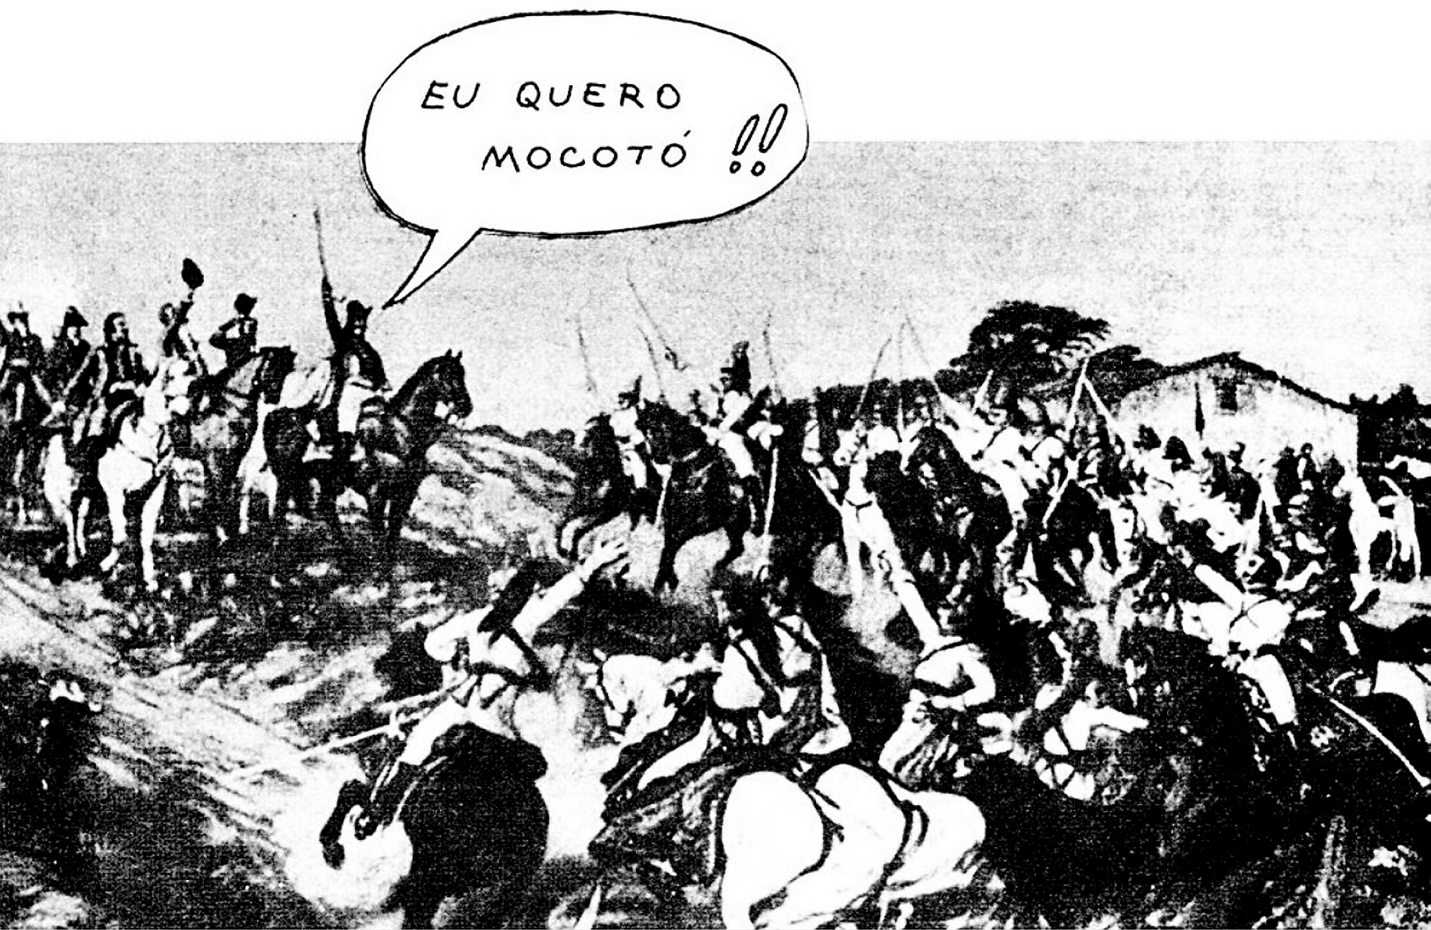 Ilustração em preto e branco. Homens a cavalo empunhando espadas estão ao redor de Dom Pedro. Ele montado em um cavalo escuro e levantando uma espada diz: EU QUERO MOCOTÓ!!